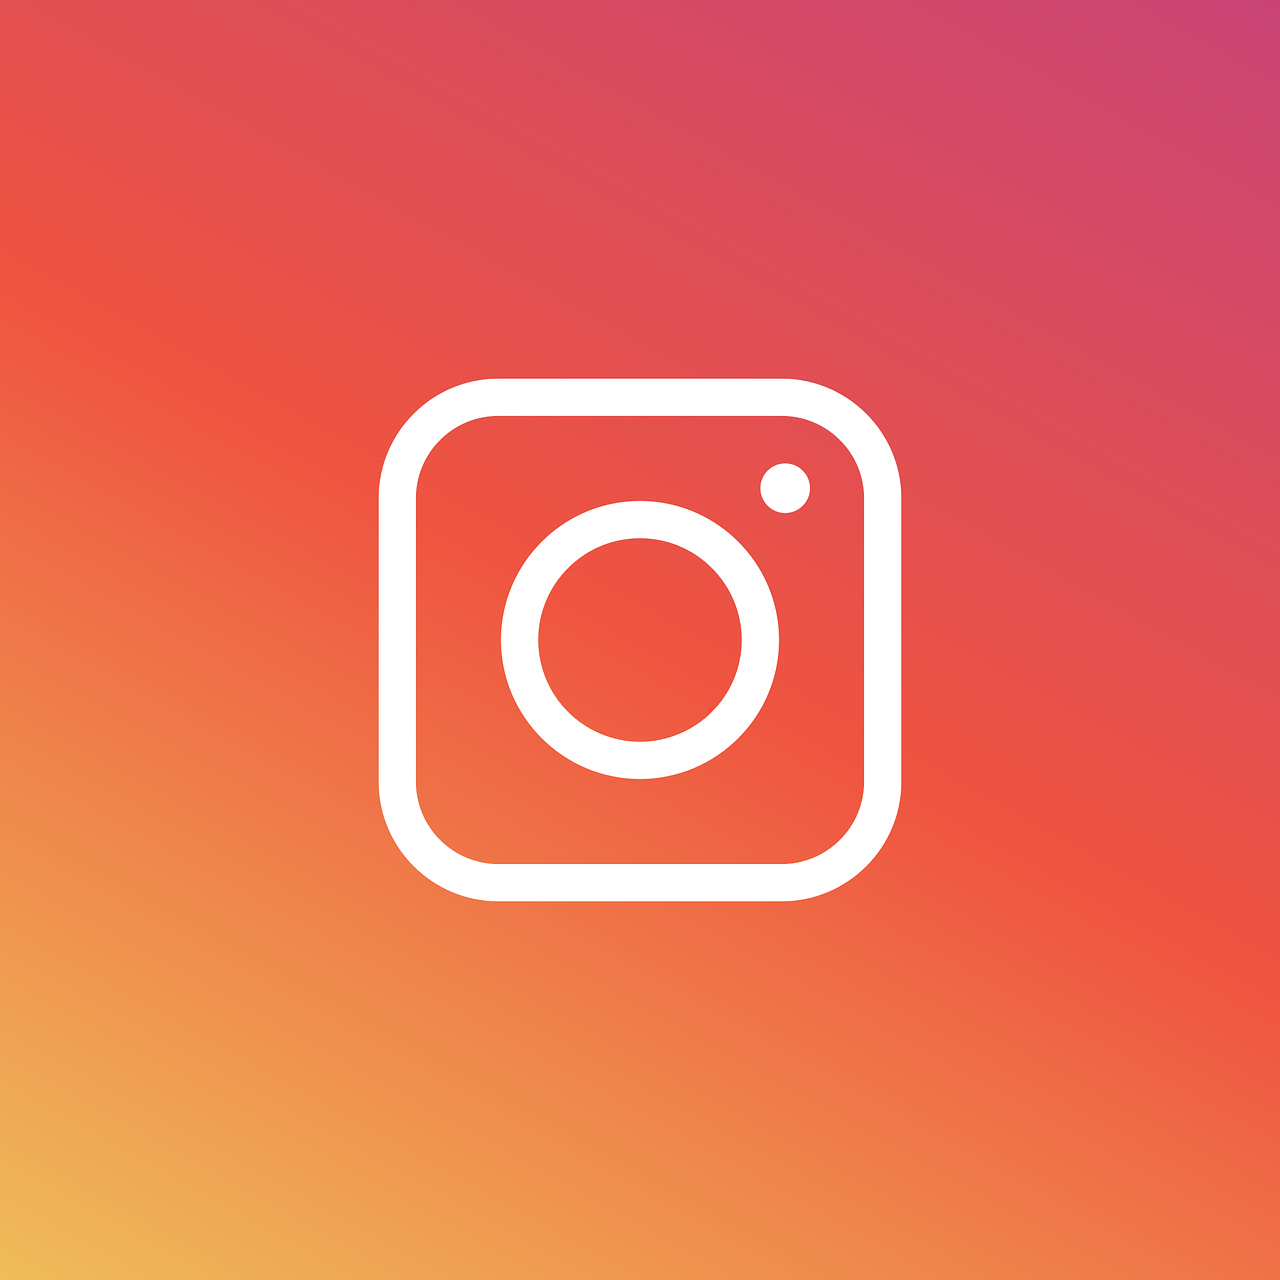 instagram logo icon free photo